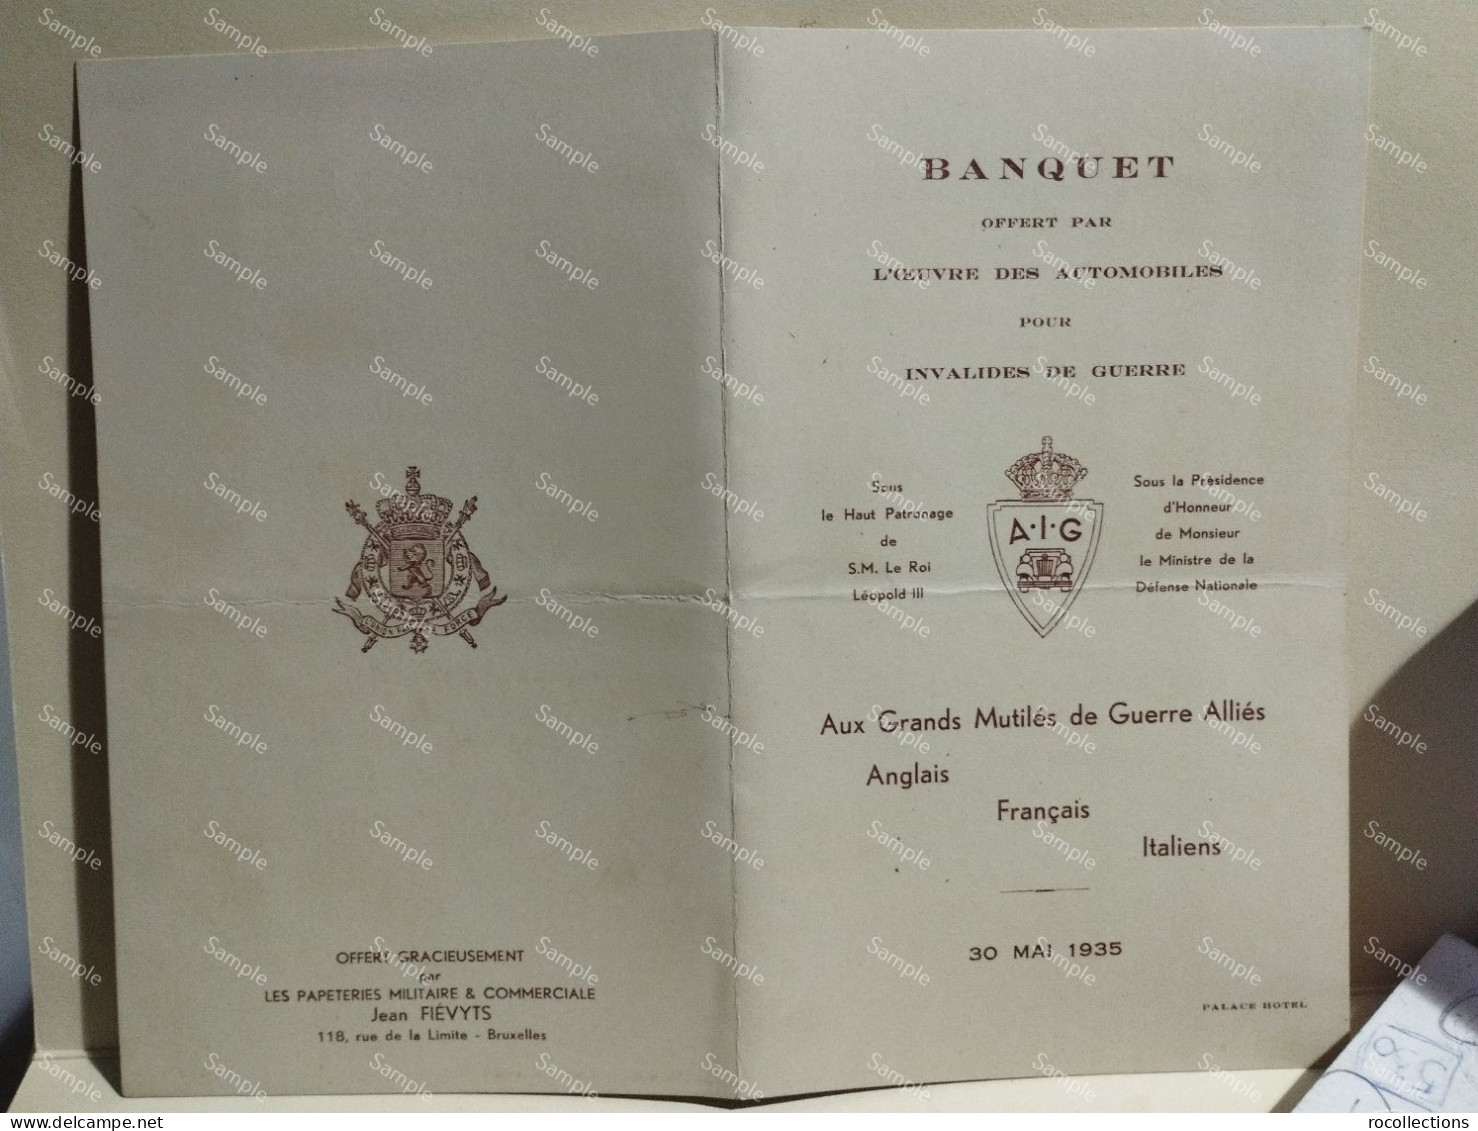 France Menù Programme BANQUET Invalides De Guerre Annglais Francais Italiens 30 Mai 1935 Palace Hotel Bruxelles. Signed - Menú